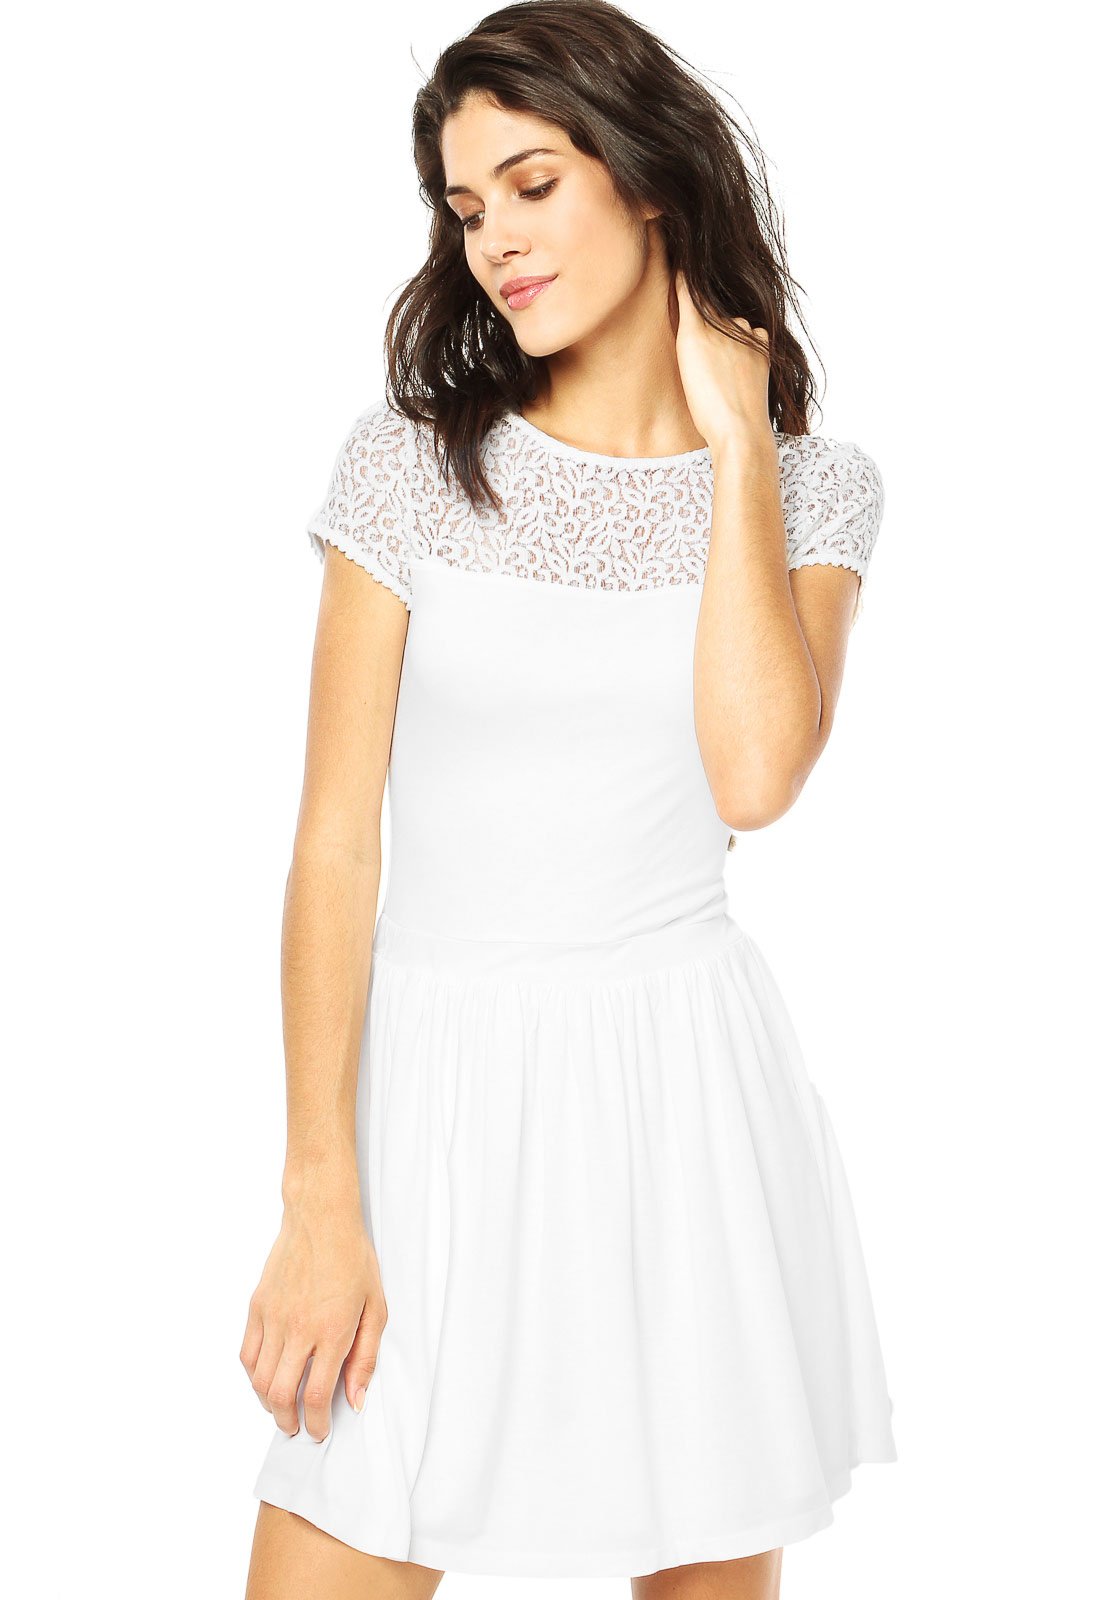 vestido evase branco